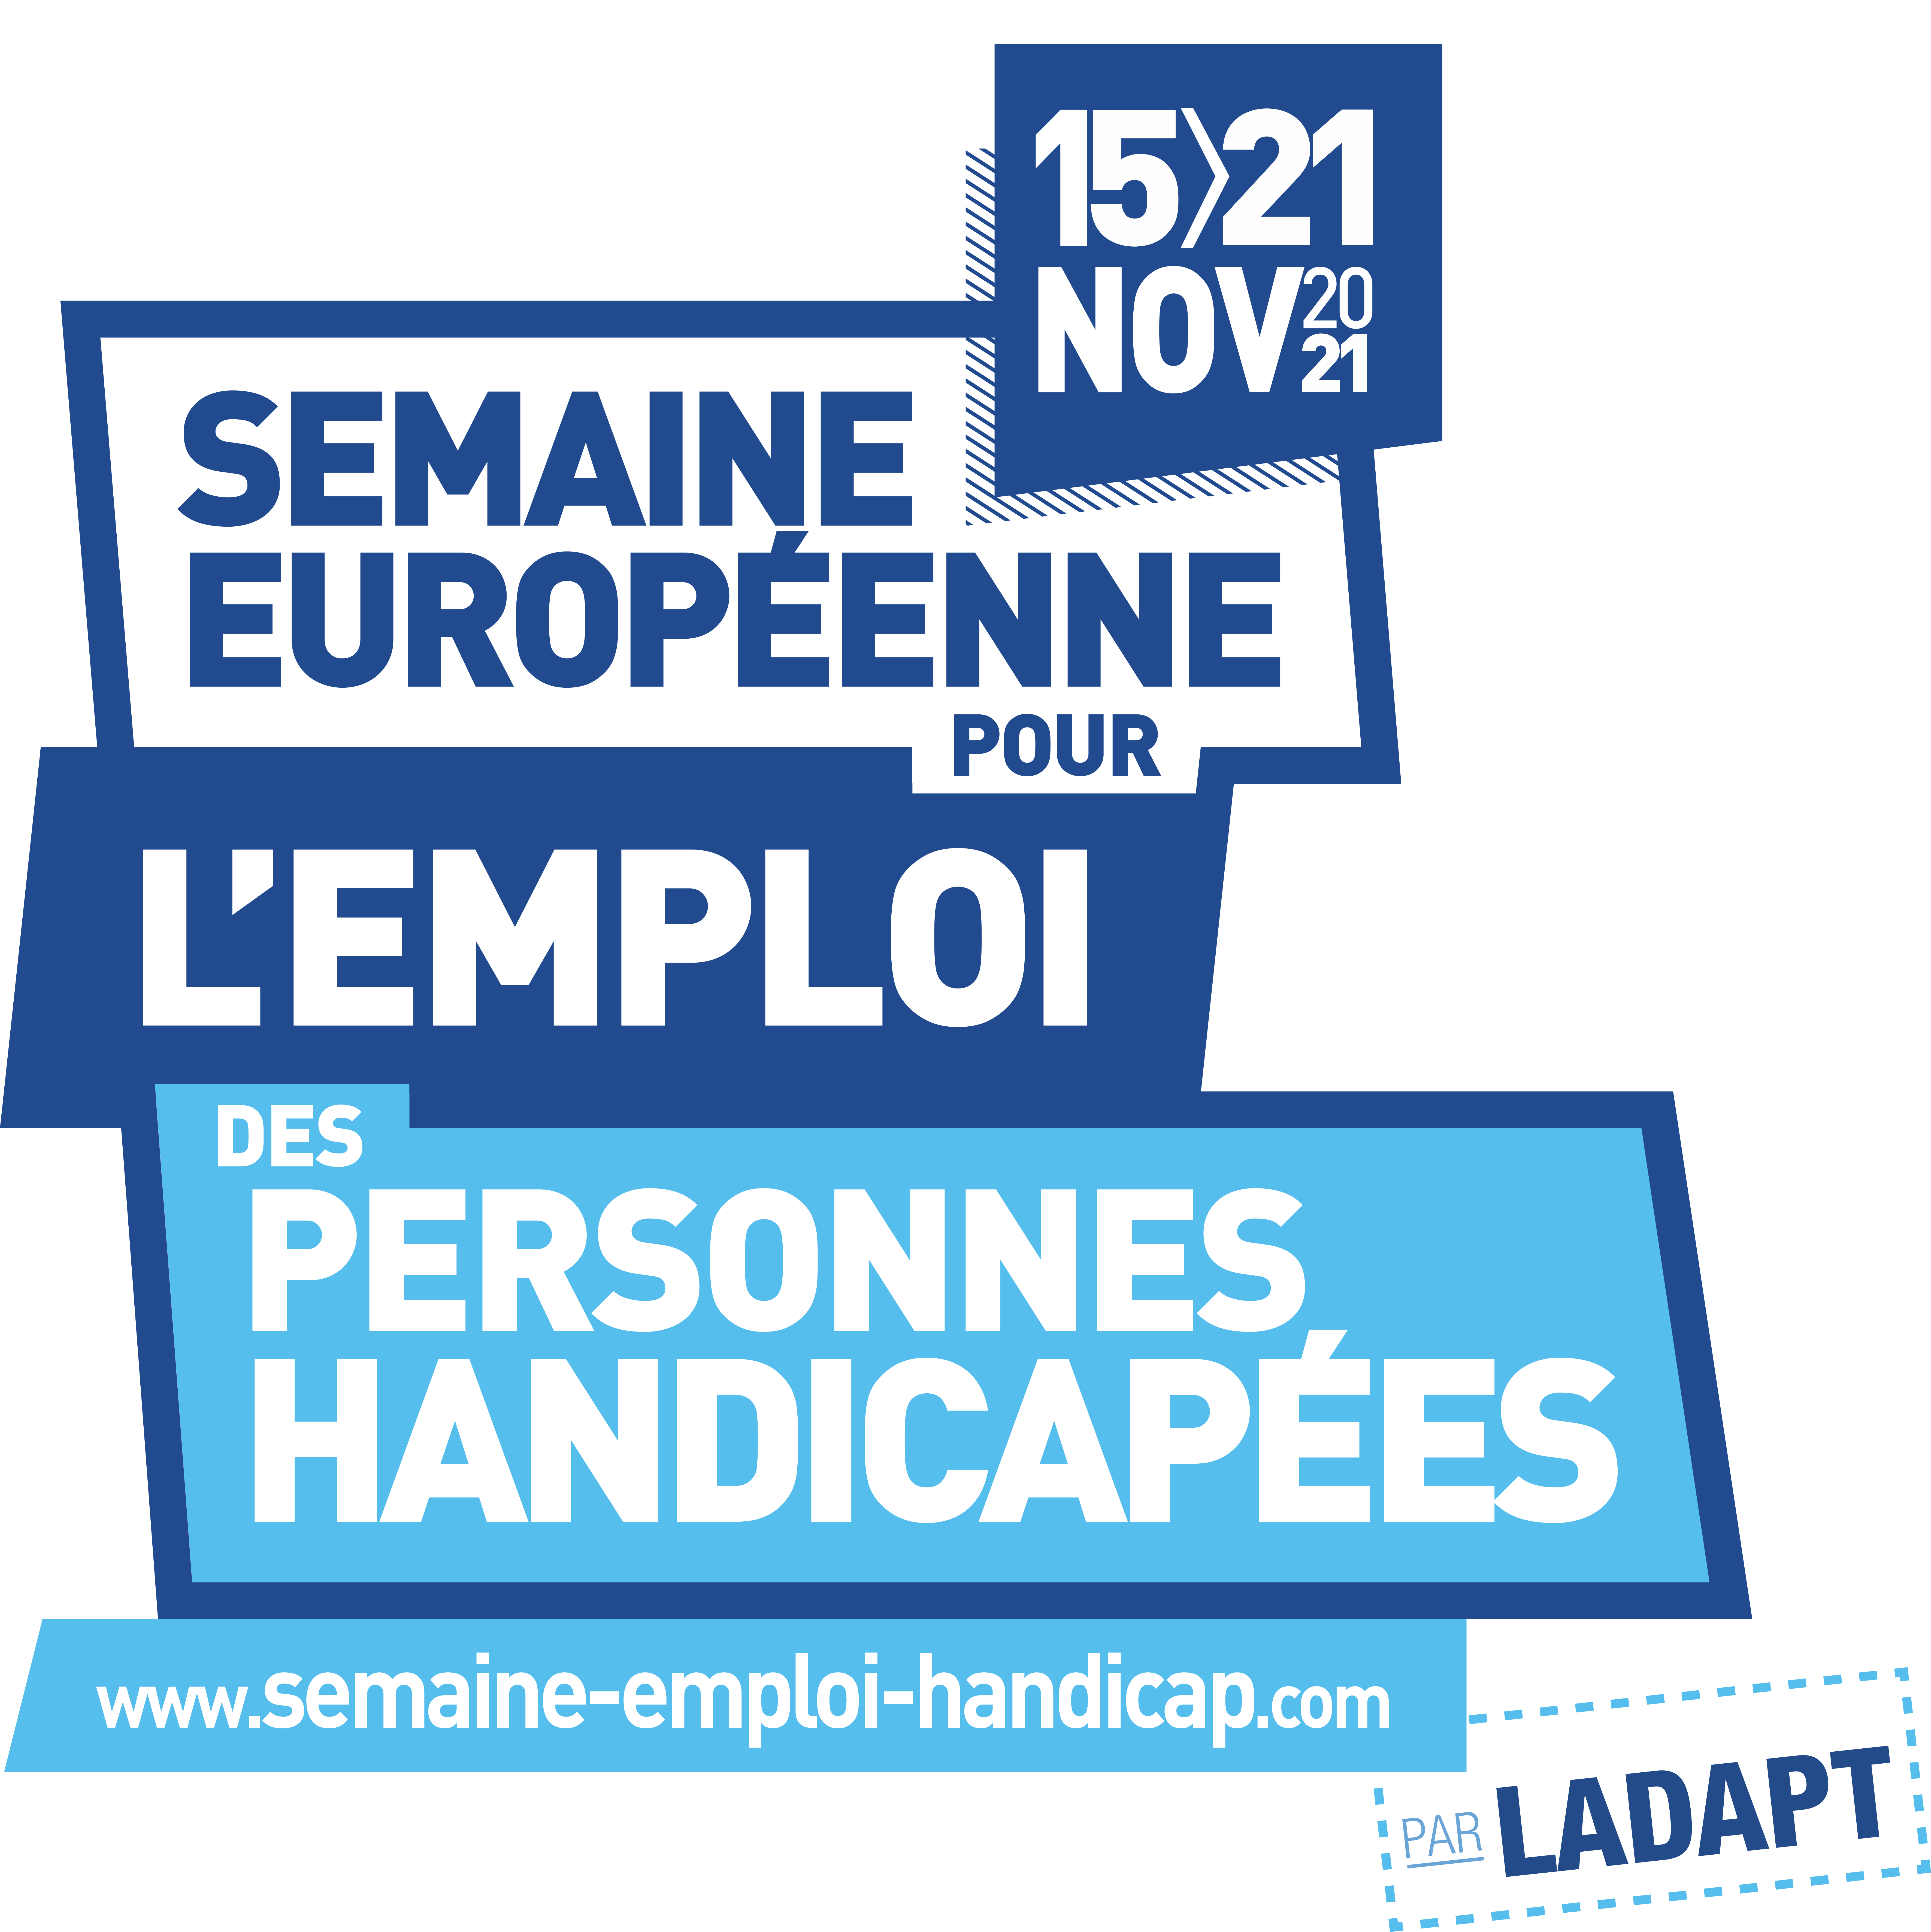 Semaine européenne pour l'emploi des personnes handicapées (logo)